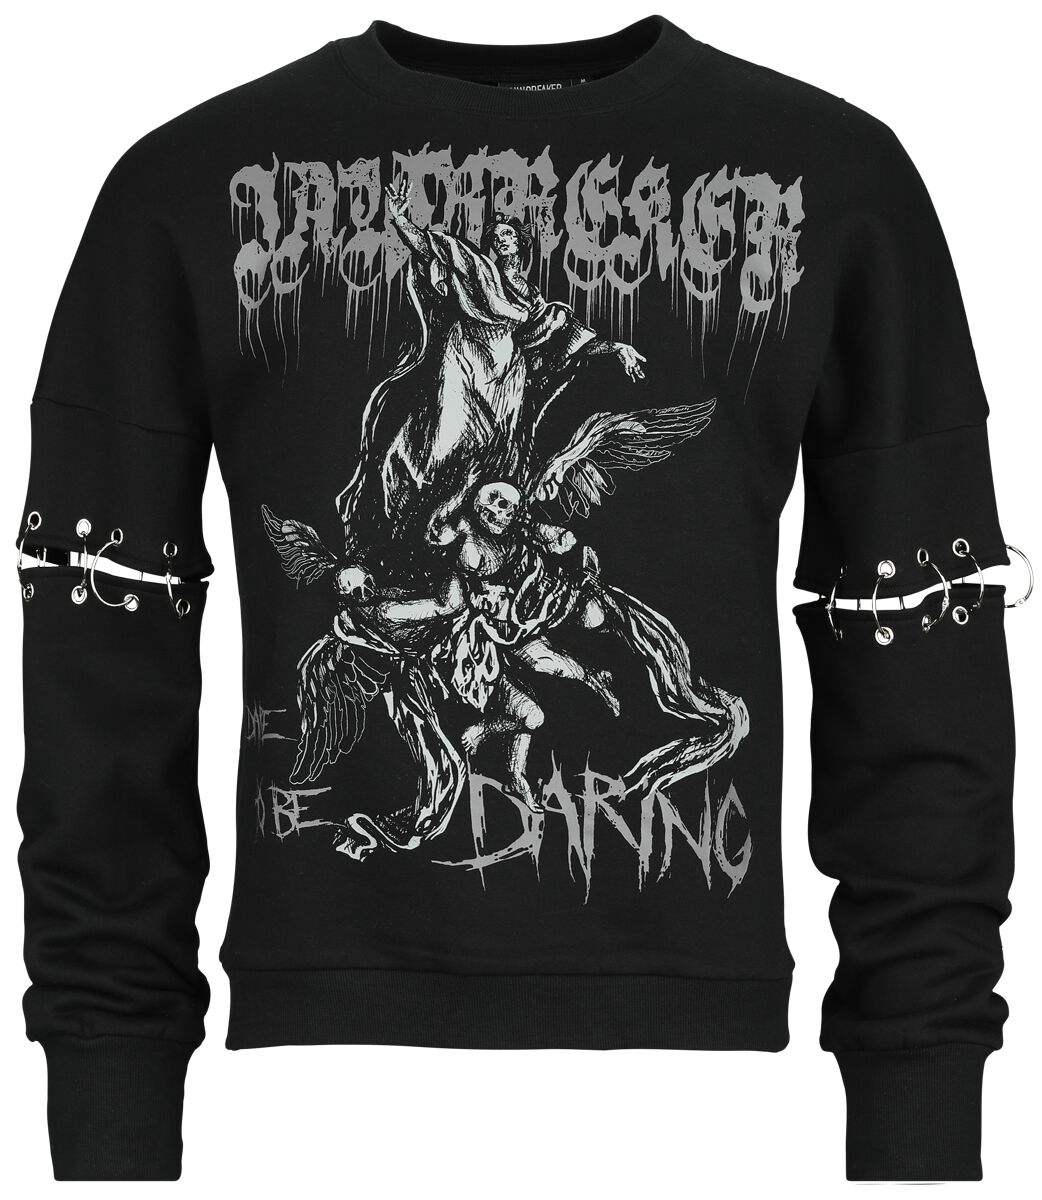 Jawbreaker - Gothic Sweatshirt - Dare To Be Daring - S bis XXL - Größe XXL - schwarz